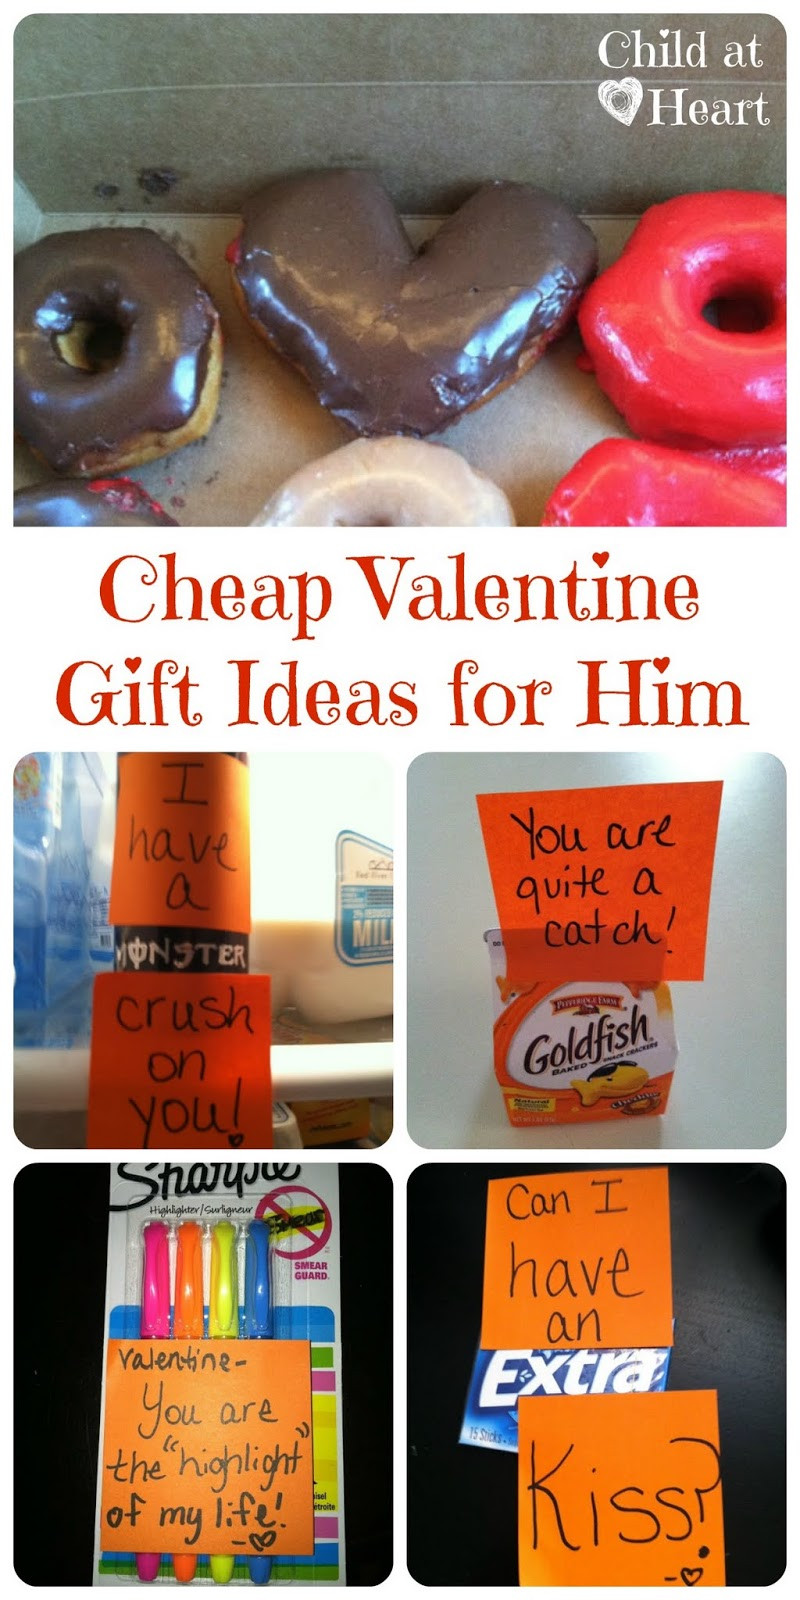 Valentine Gift Ideas For Him
 Cheap Valentine Gift Ideas for Him Child at Heart Blog